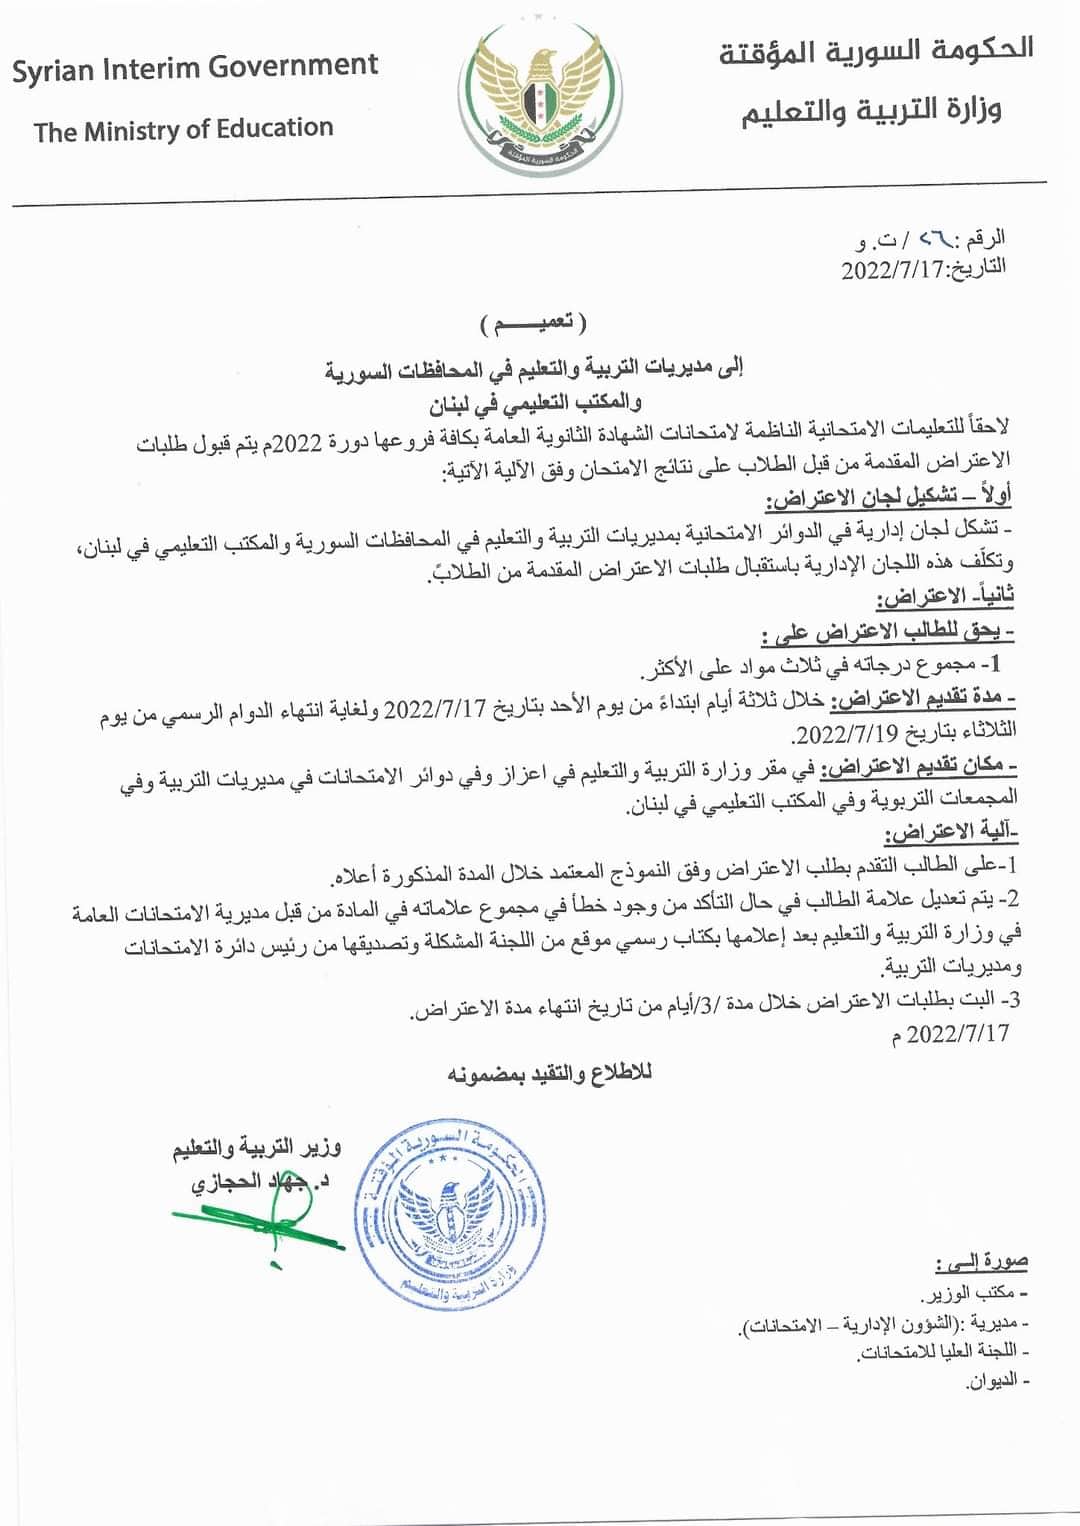 الاعتراض على نتائج الثانوية العامة في ريف حلب (وزارة التربية والتعليم)